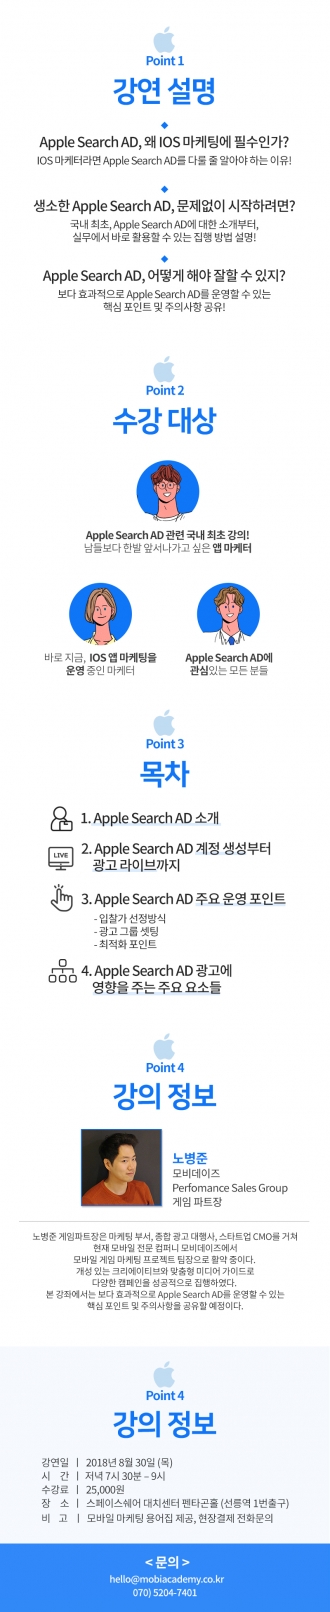 [국내 최초 강의] Apple Search AD(애플 앱스토어 검색광고) 시작하기